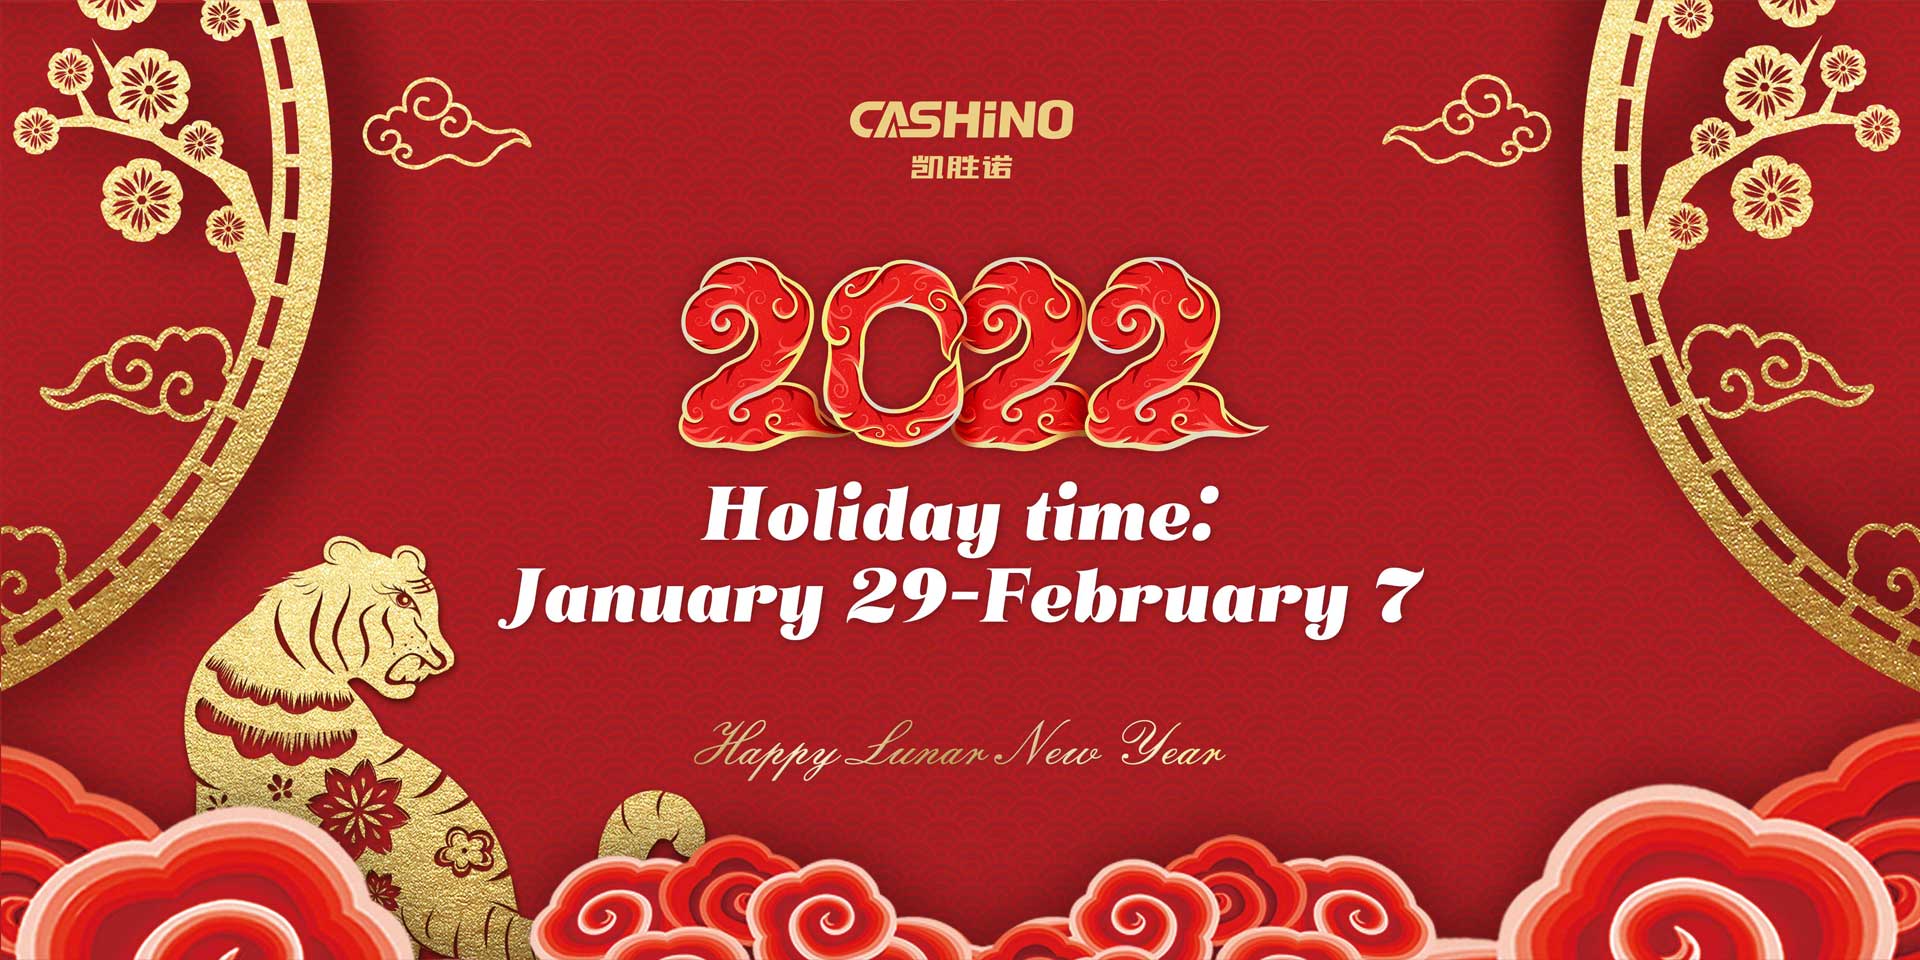 إشعار عطلة Cashino.